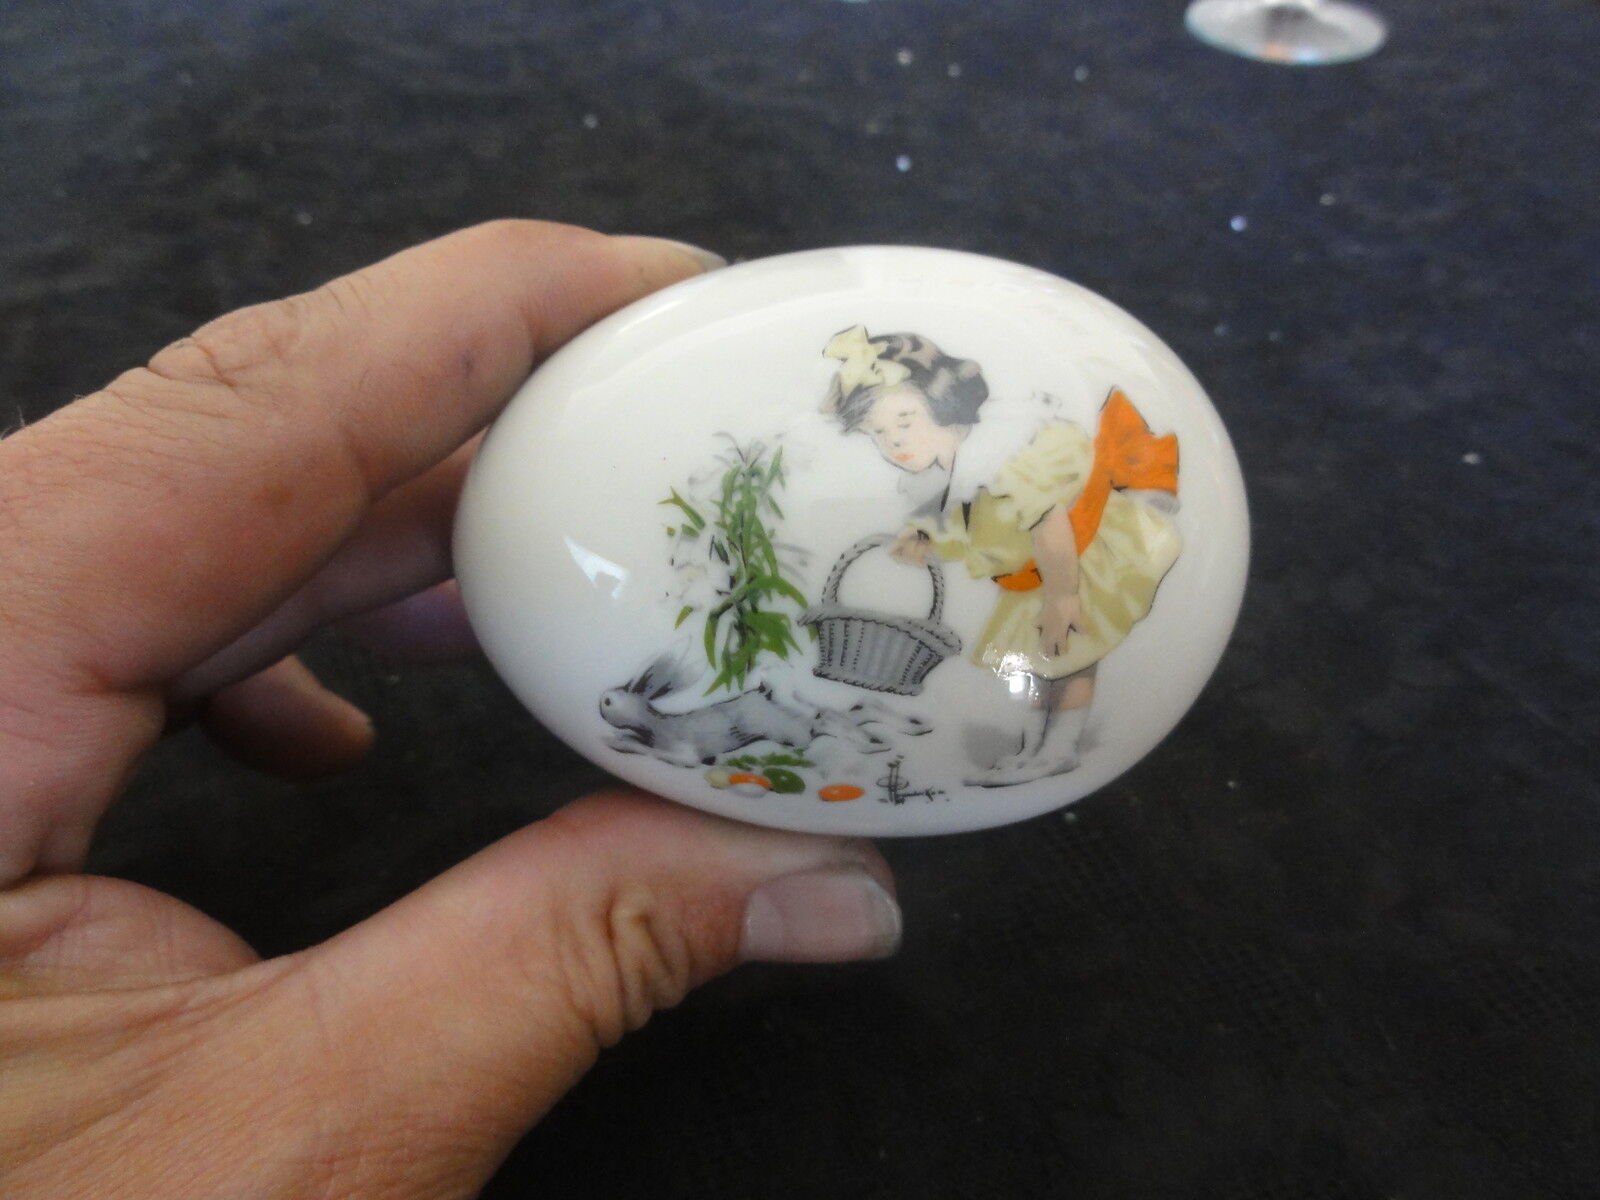 1976 Ridgewood Easter Bunny Rabbit Egg - Adorable